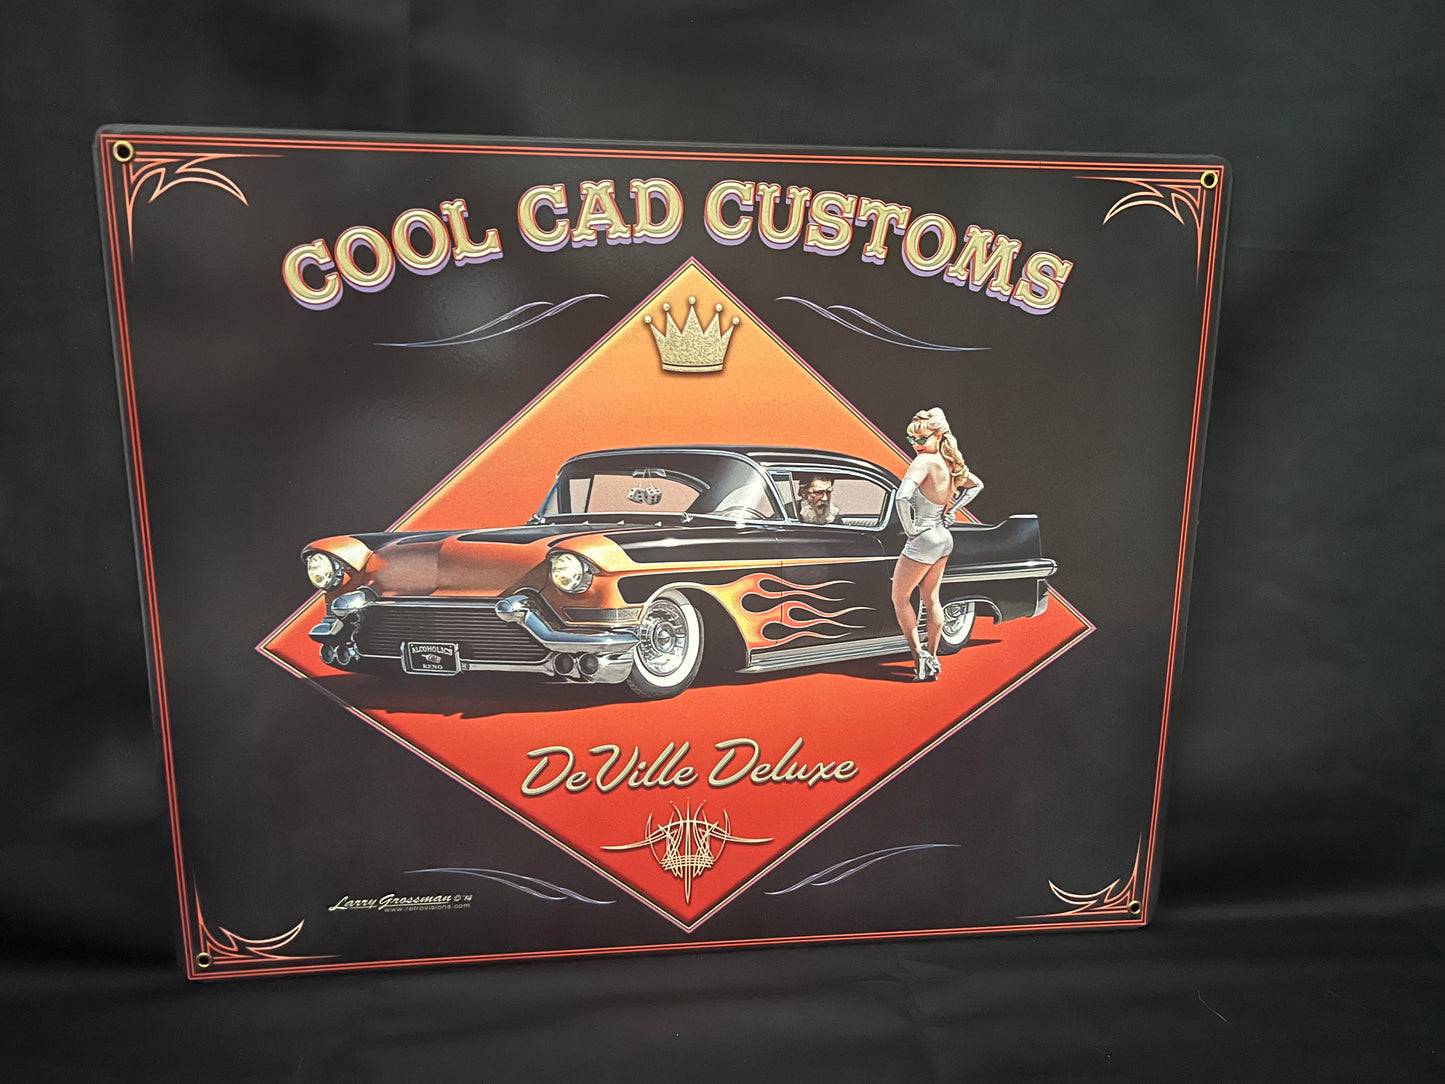 Blechschild "Cool Cad Customs"